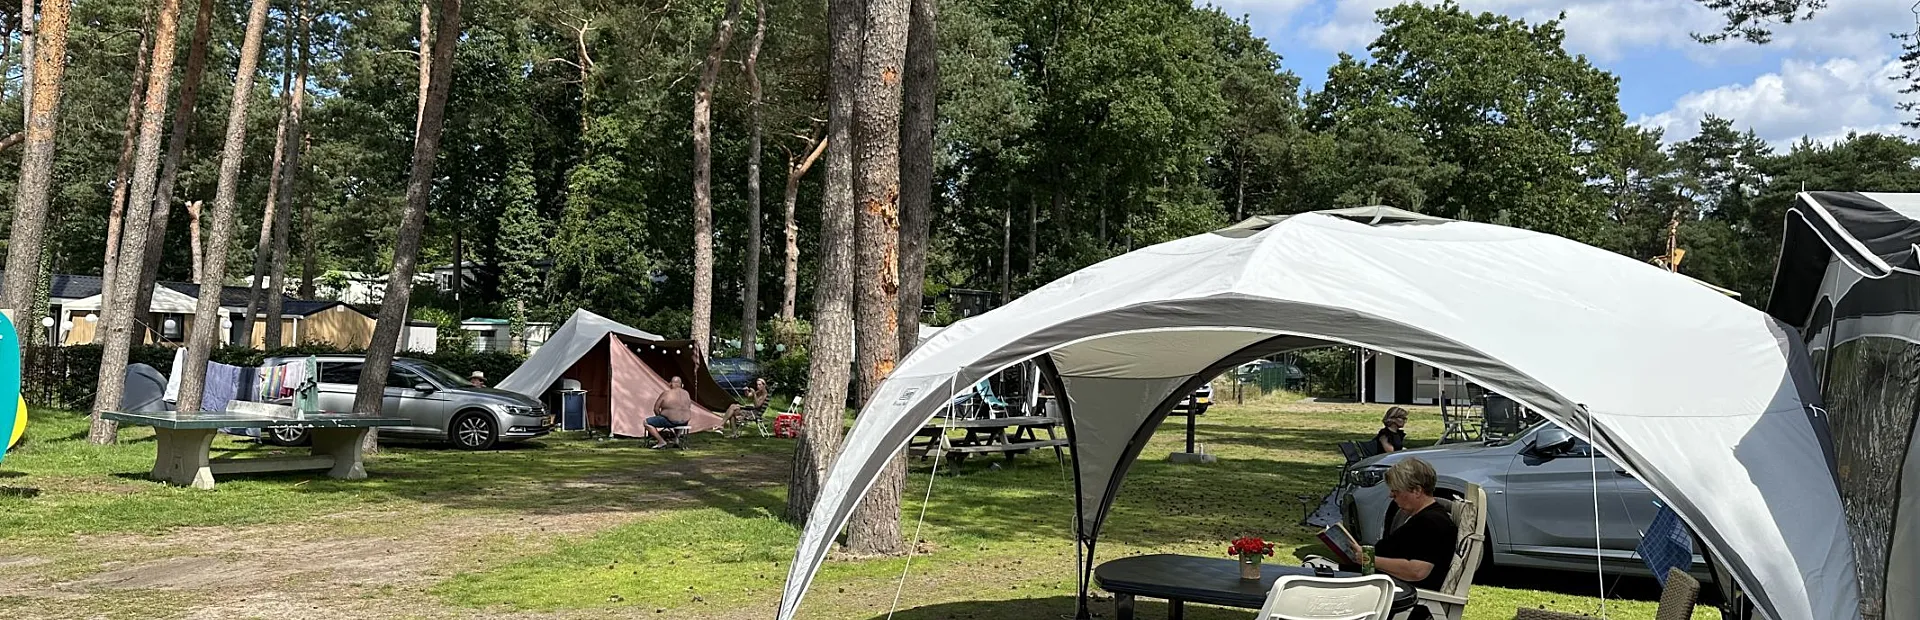 Camping Veluwe Torenvalk 14